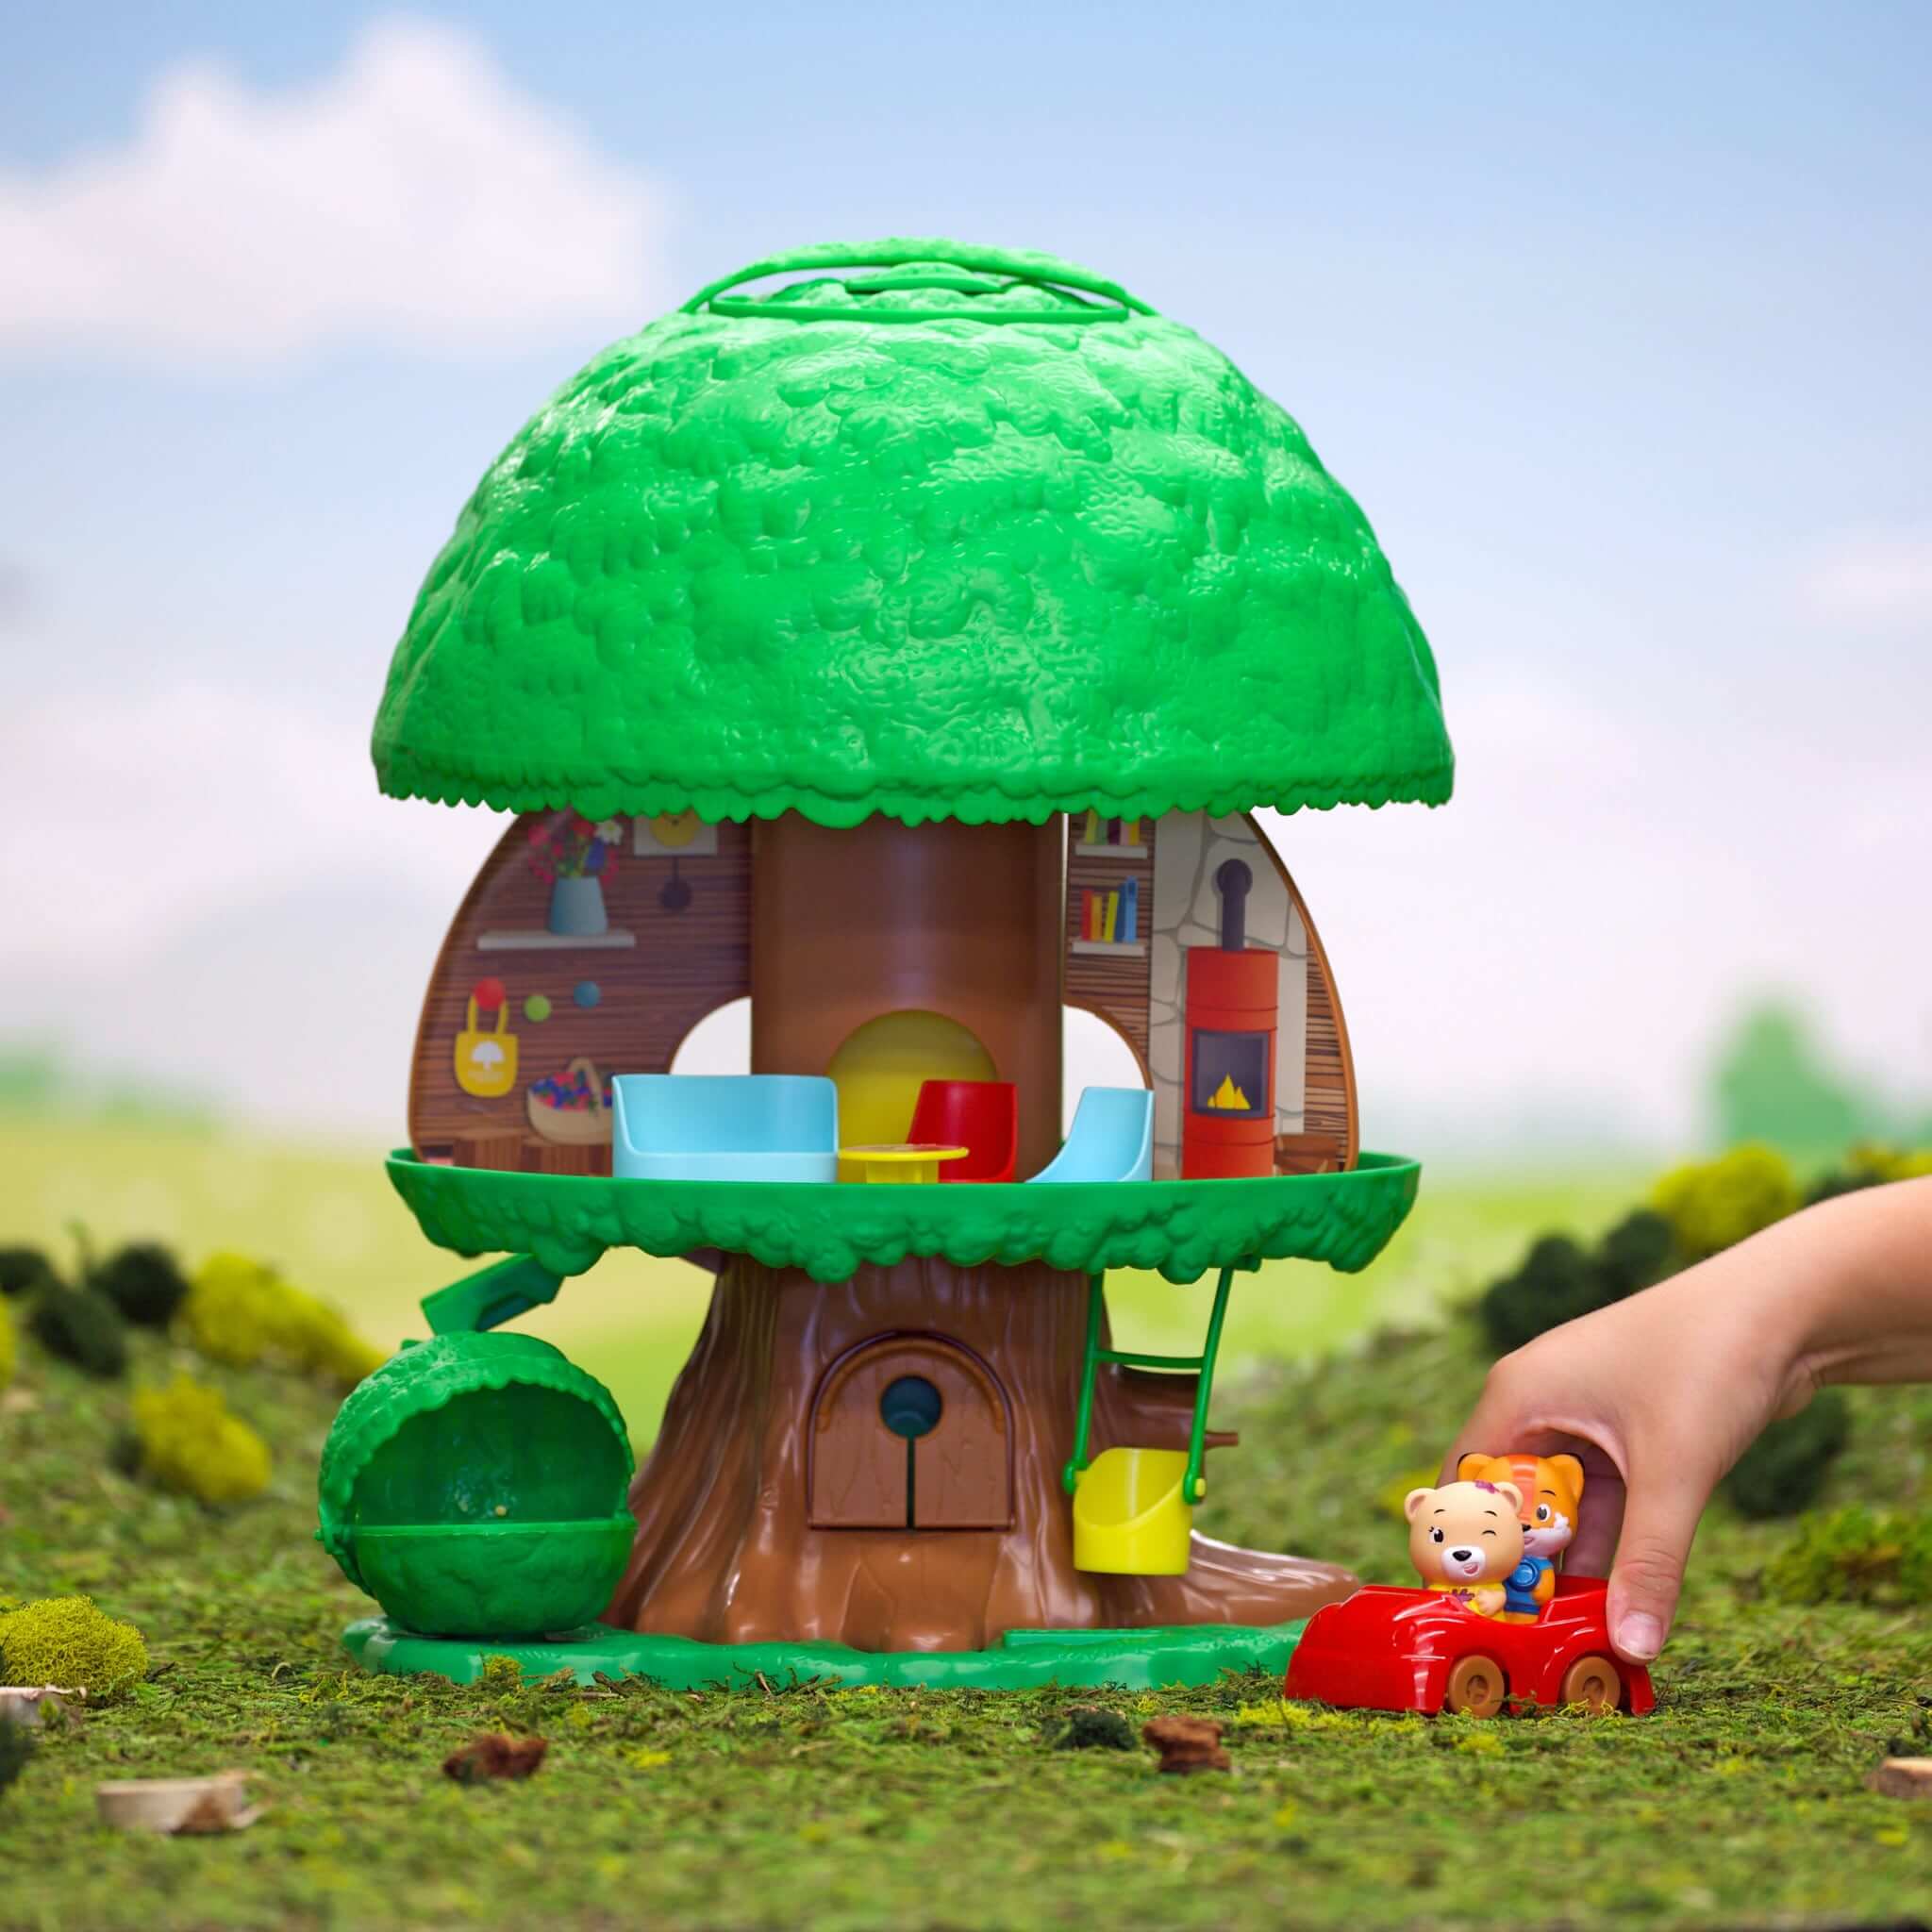 Zabawki, figurki firmy Klorofil - magiczny świat leśnych stworzeń w JasieBasie.pl